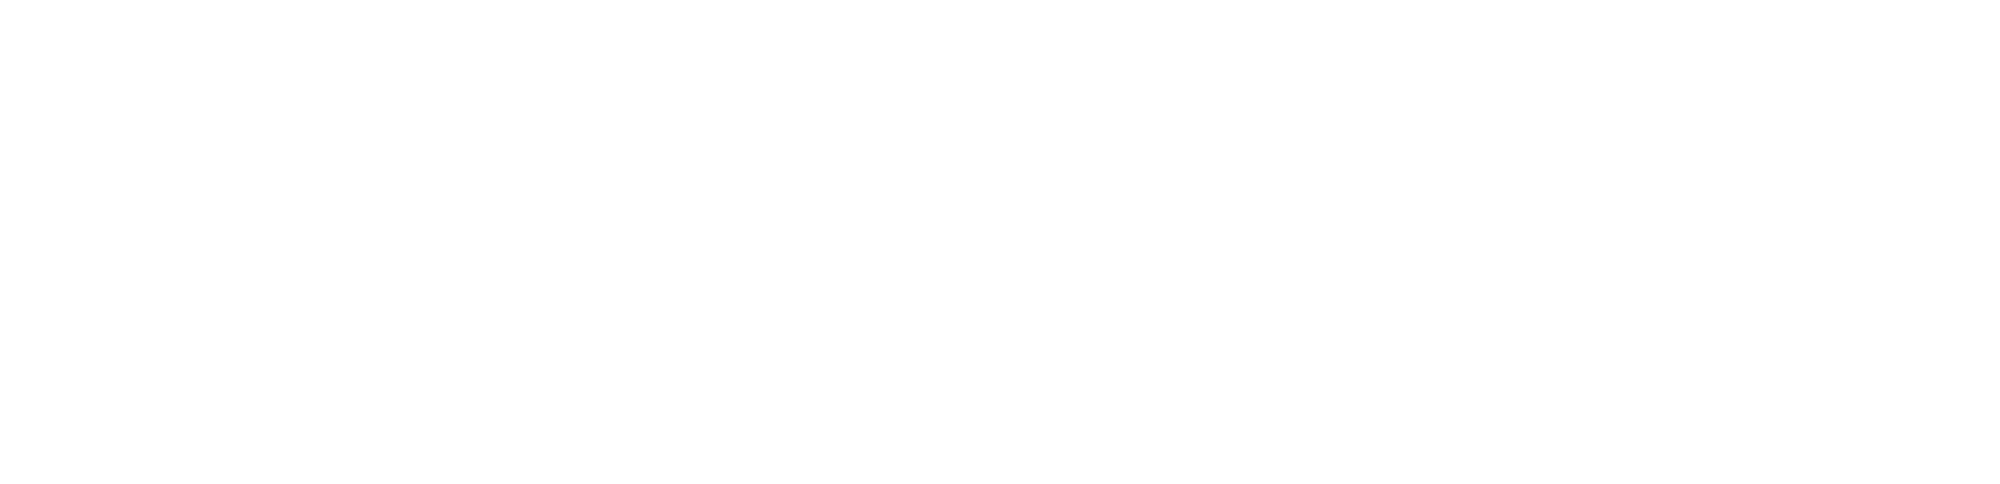 Restorex High Resolution Logo White Transparent